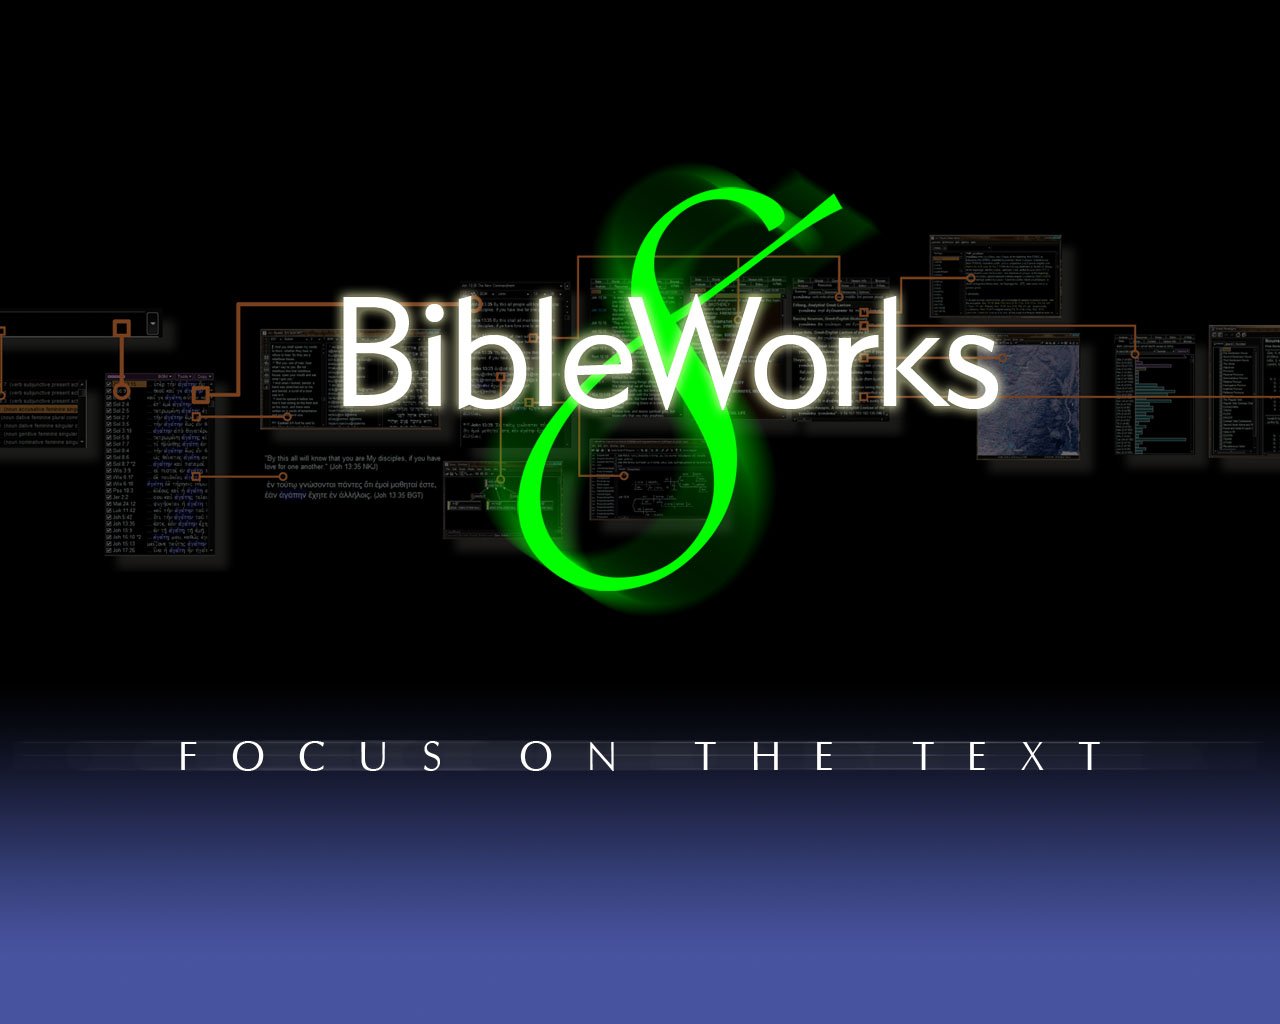 bibleworks 10 crack download